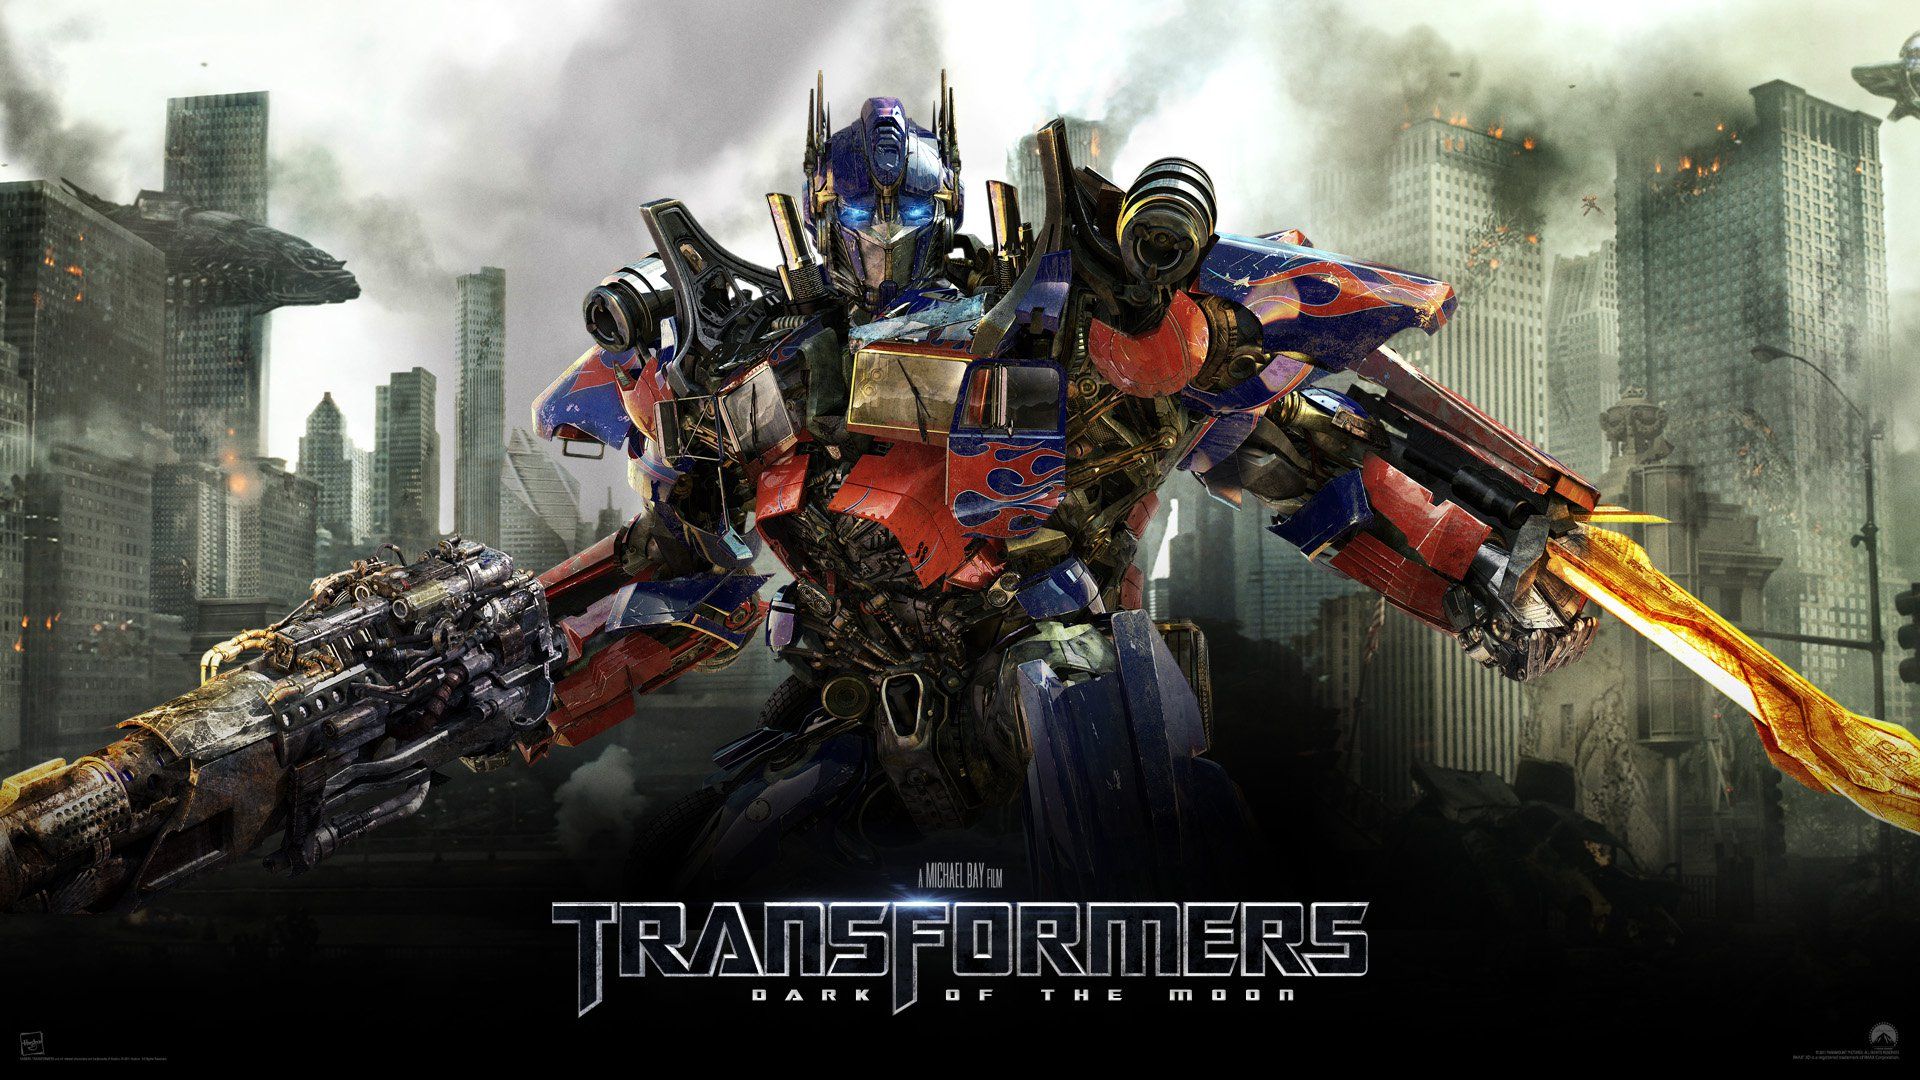 Imagenes Transformers wallpapers hd - Taringa